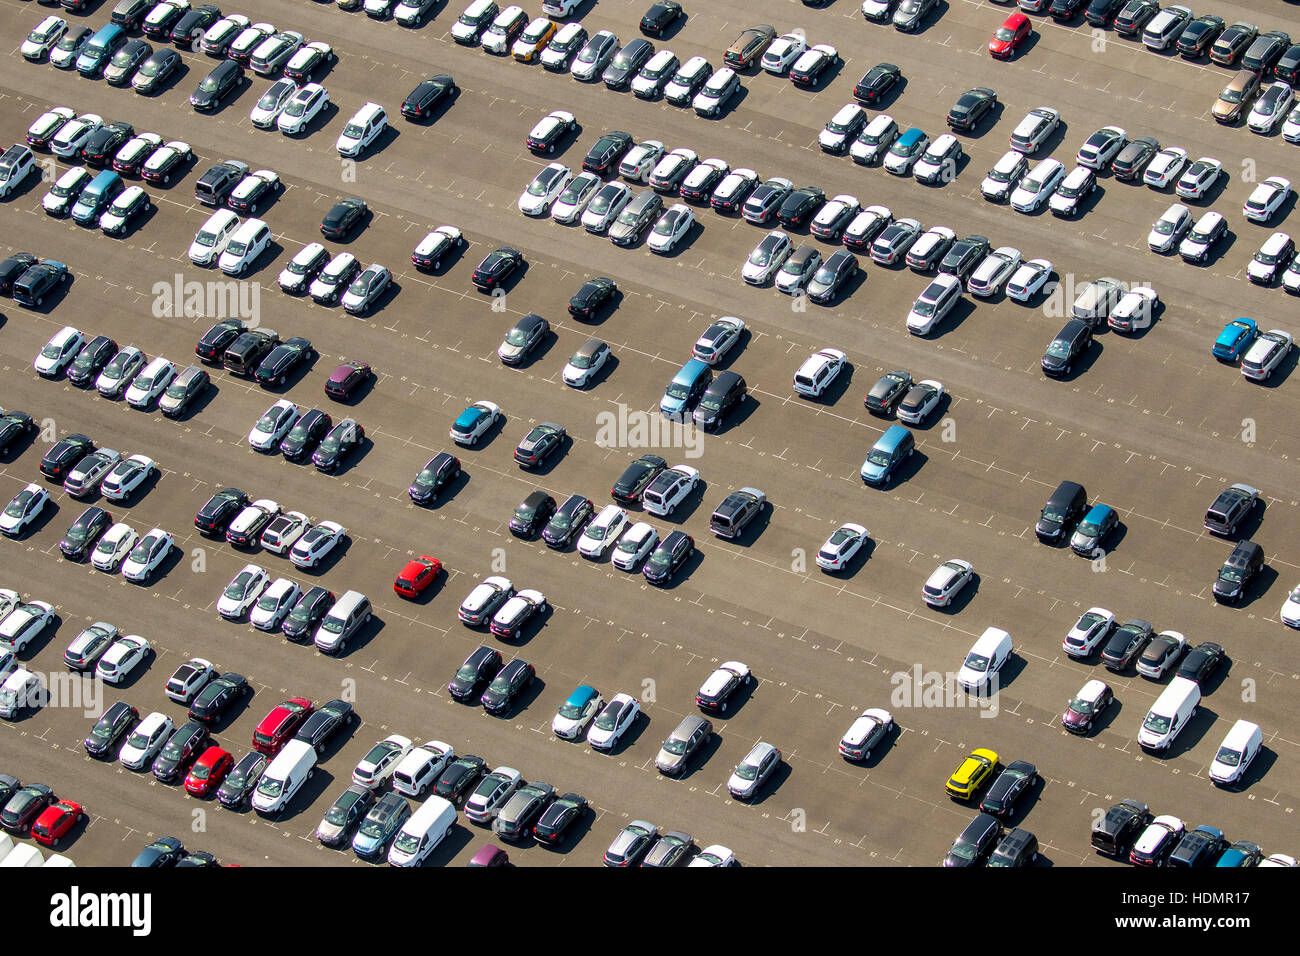 Fotografía aérea, nuevo coche en el aparcamiento, Citroen, Peugeot, Ford, coloridas filas de coches, la naviera Wallenius Wilhelmsen Logistics, Zülpich Foto de stock